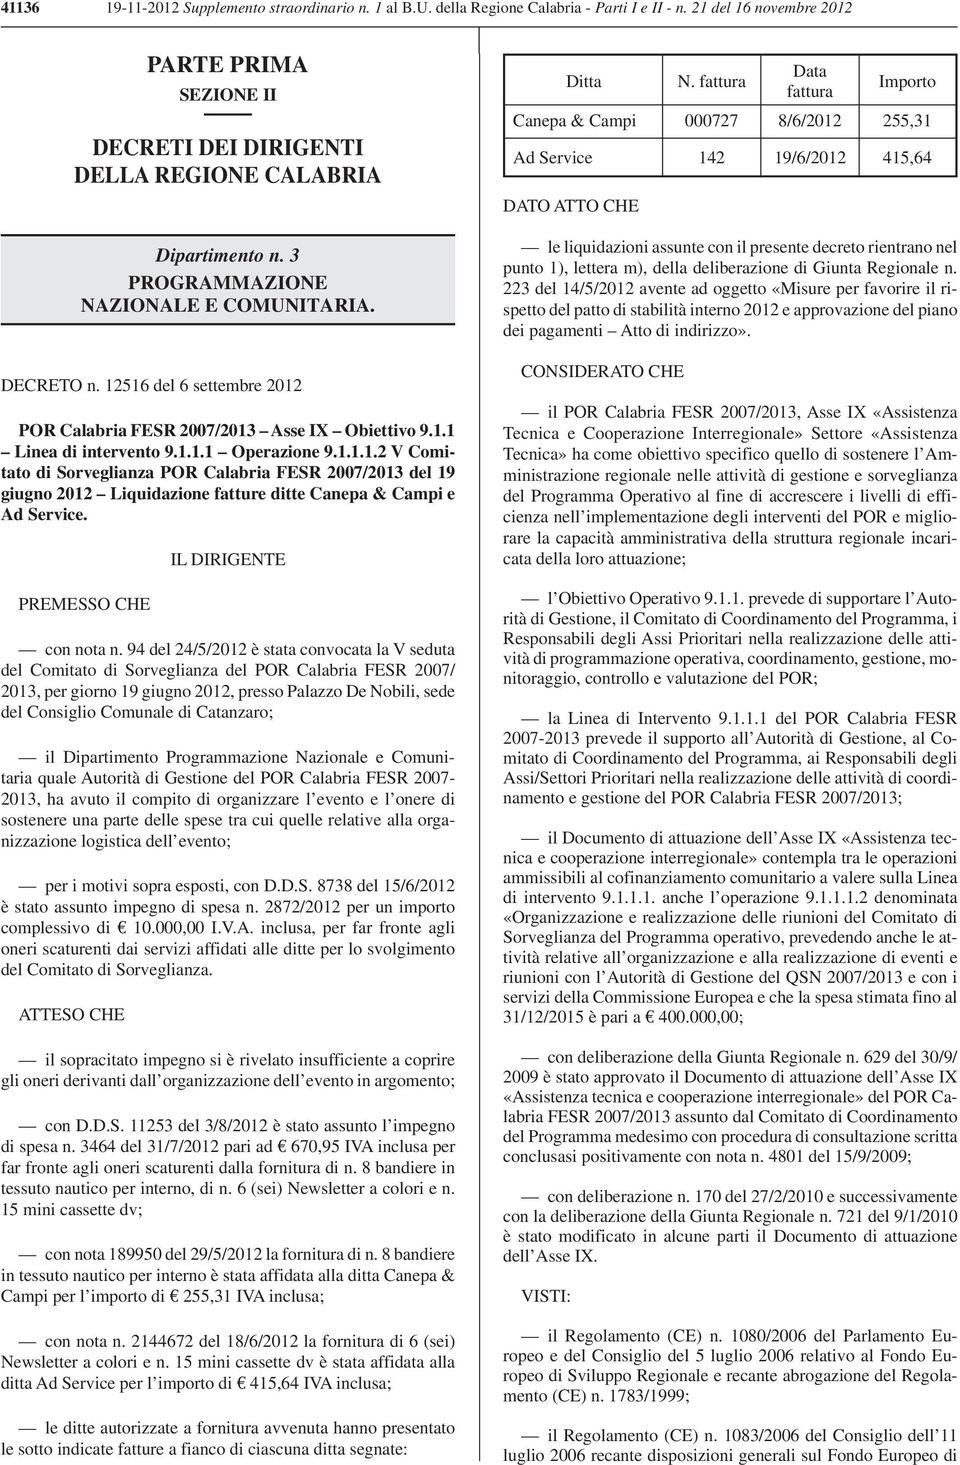 12516 del 6 settembre 2012 POR Calabria FESR 2007/2013 Asse IX Obiettivo 9.1.1 Linea di intervento 9.1.1.1 Operazione 9.1.1.1.2 V Comitato di Sorveglianza POR Calabria FESR 2007/2013 del 19 giugno 2012 Liquidazione fatture ditte Canepa & Campi e Ad Service.